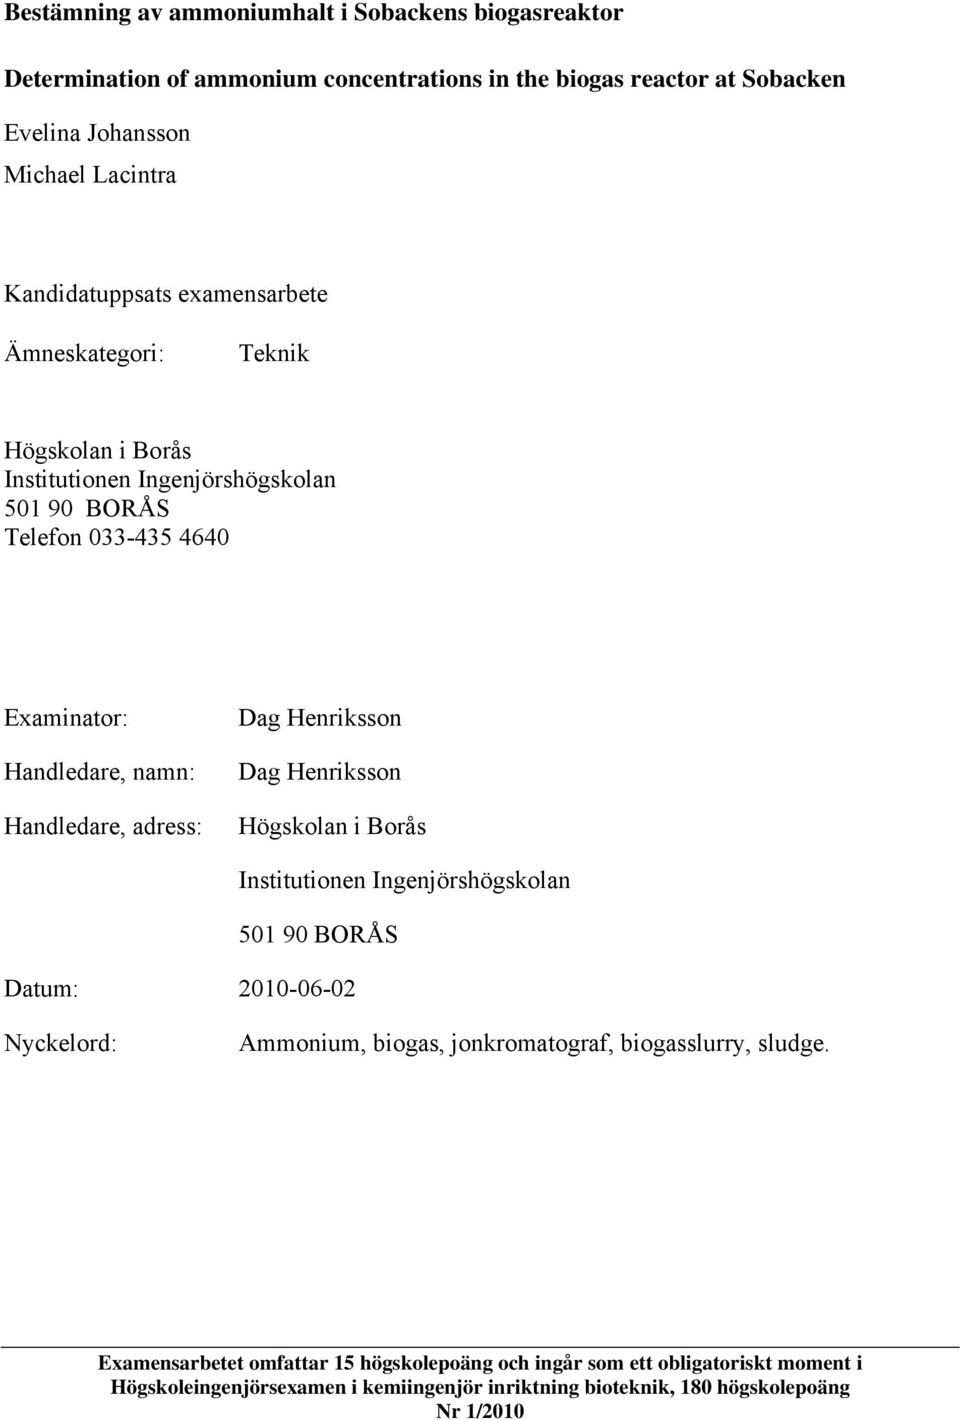 Handledare, adress: Dag Henriksson Dag Henriksson Högskolan i Borås Institutionen Ingenjörshögskolan 501 90 BORÅS Datum: 2010-06-02 Nyckelord: Ammonium, biogas,